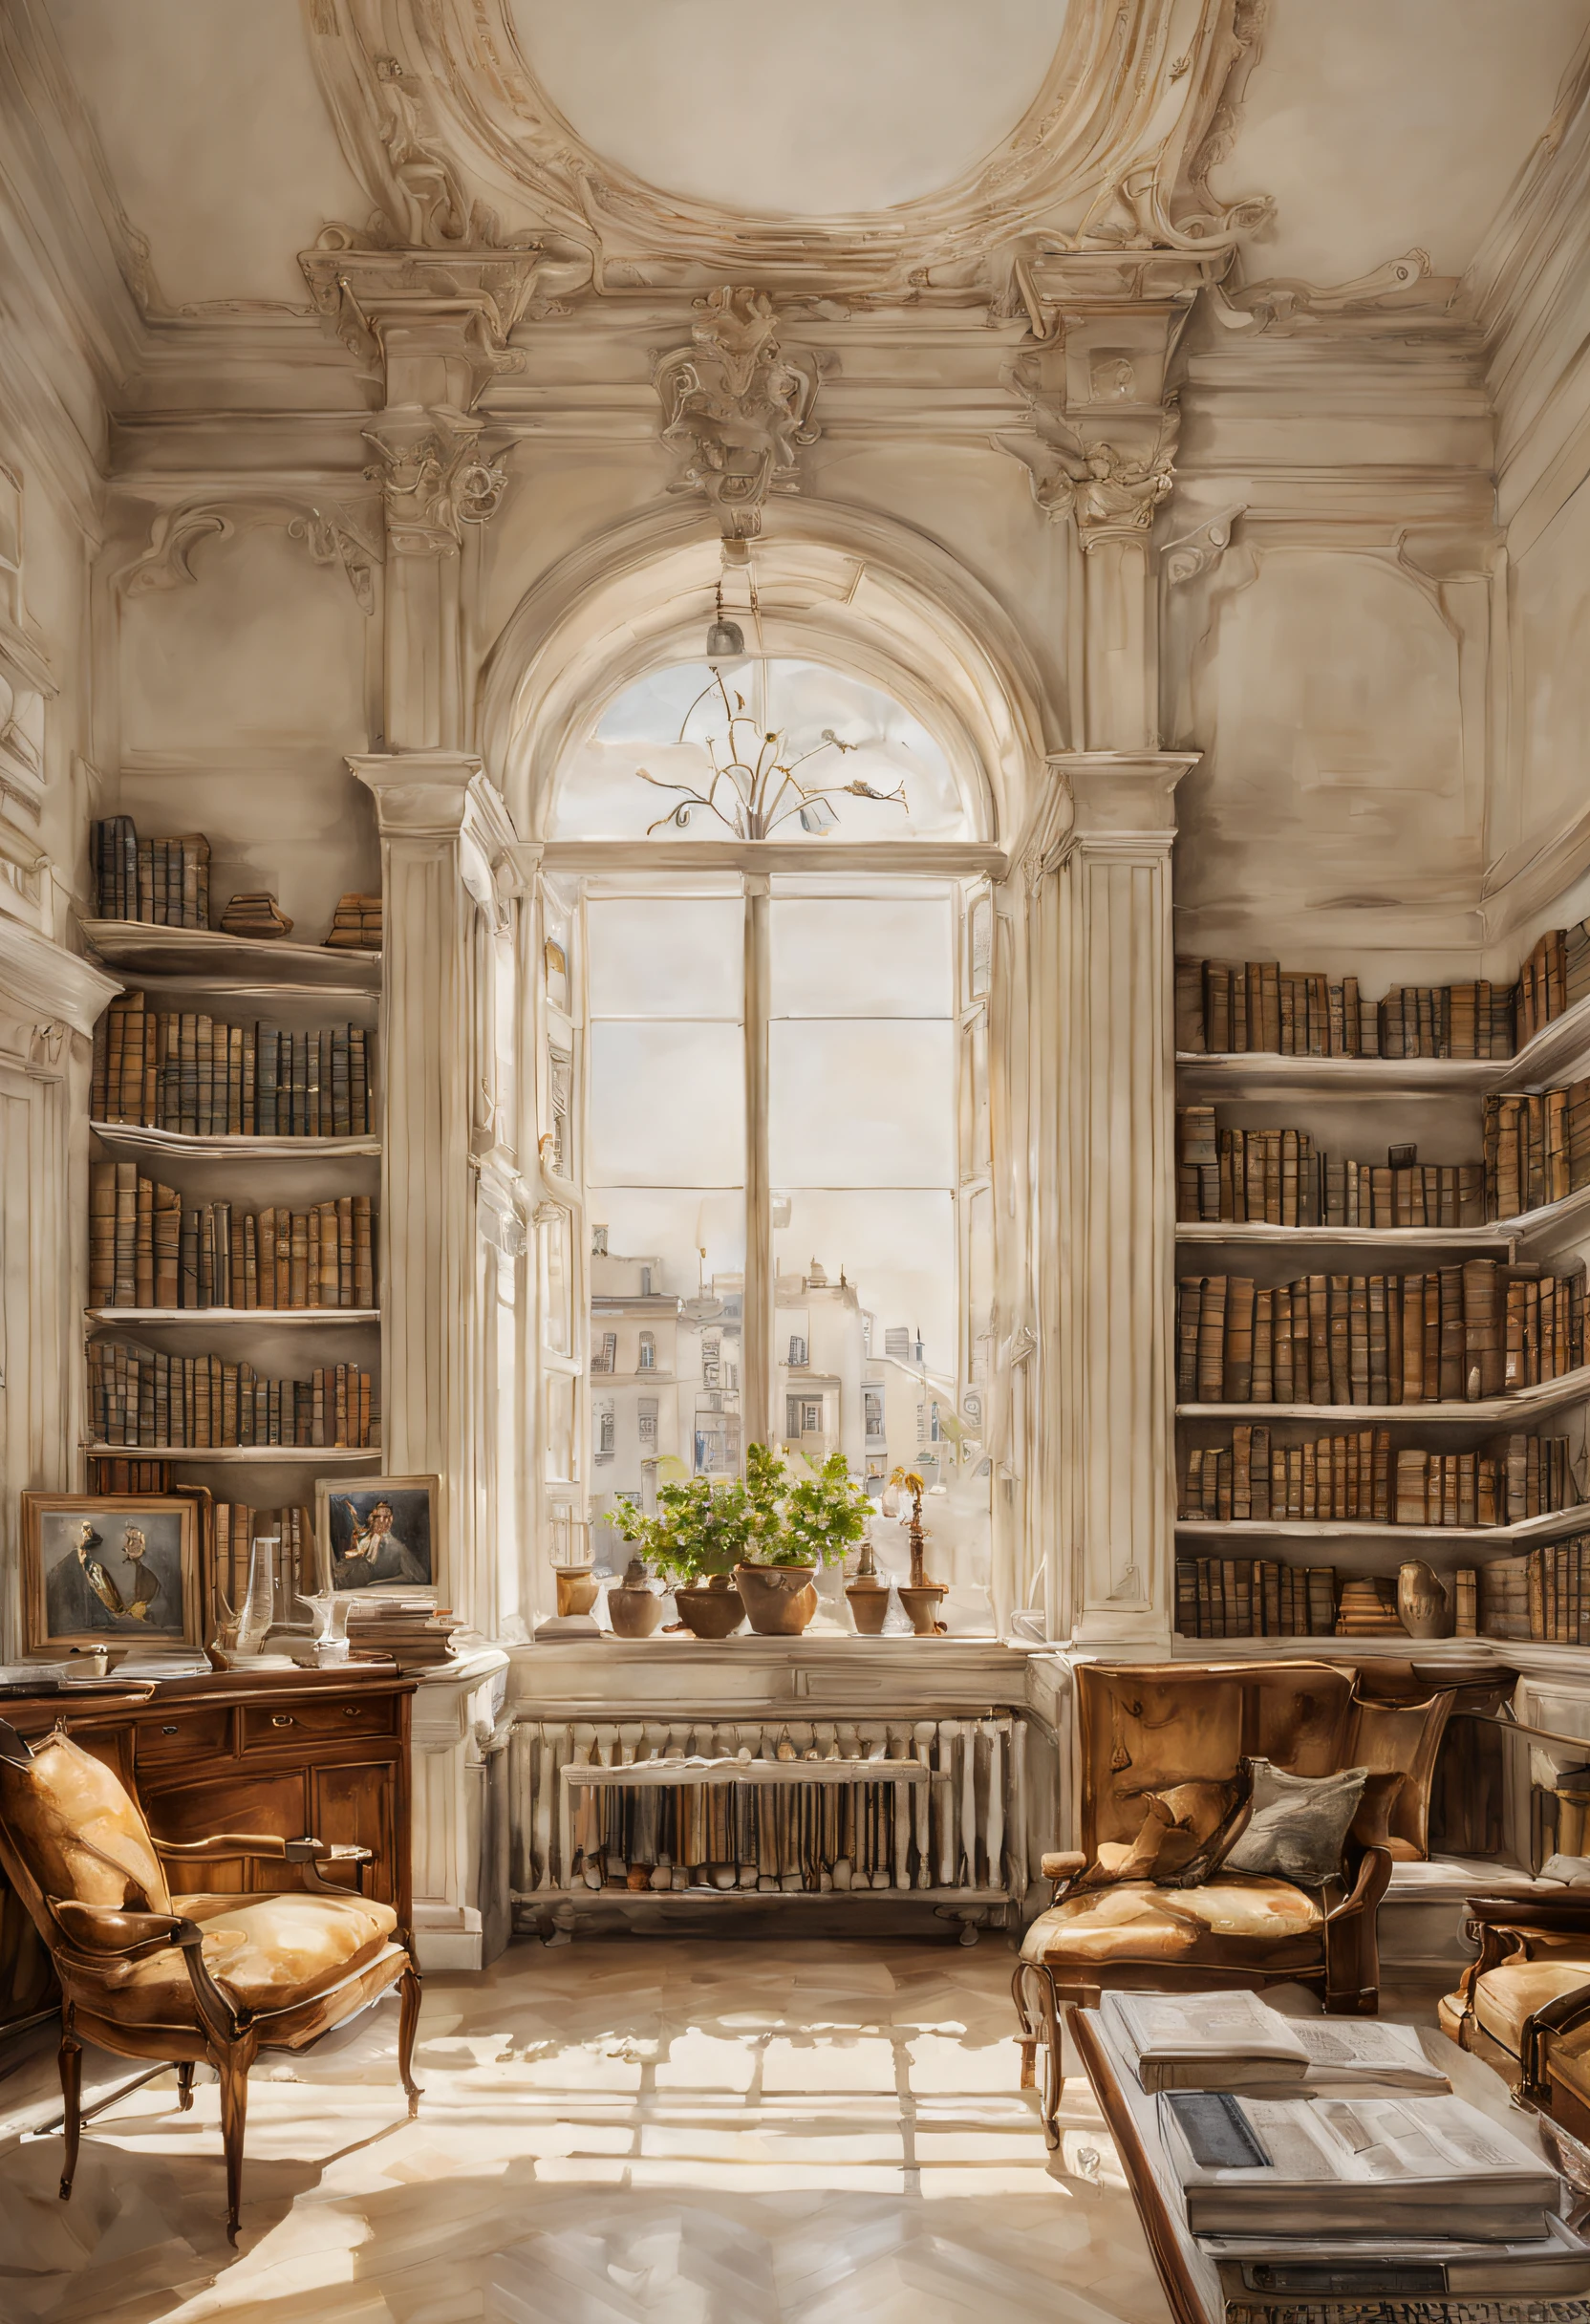 (Acuarela en estilo Sargent)、(de la máxima calidad、obra maestra) luz , oficina elegante con muchos libros , edificio viejo con una chimenea